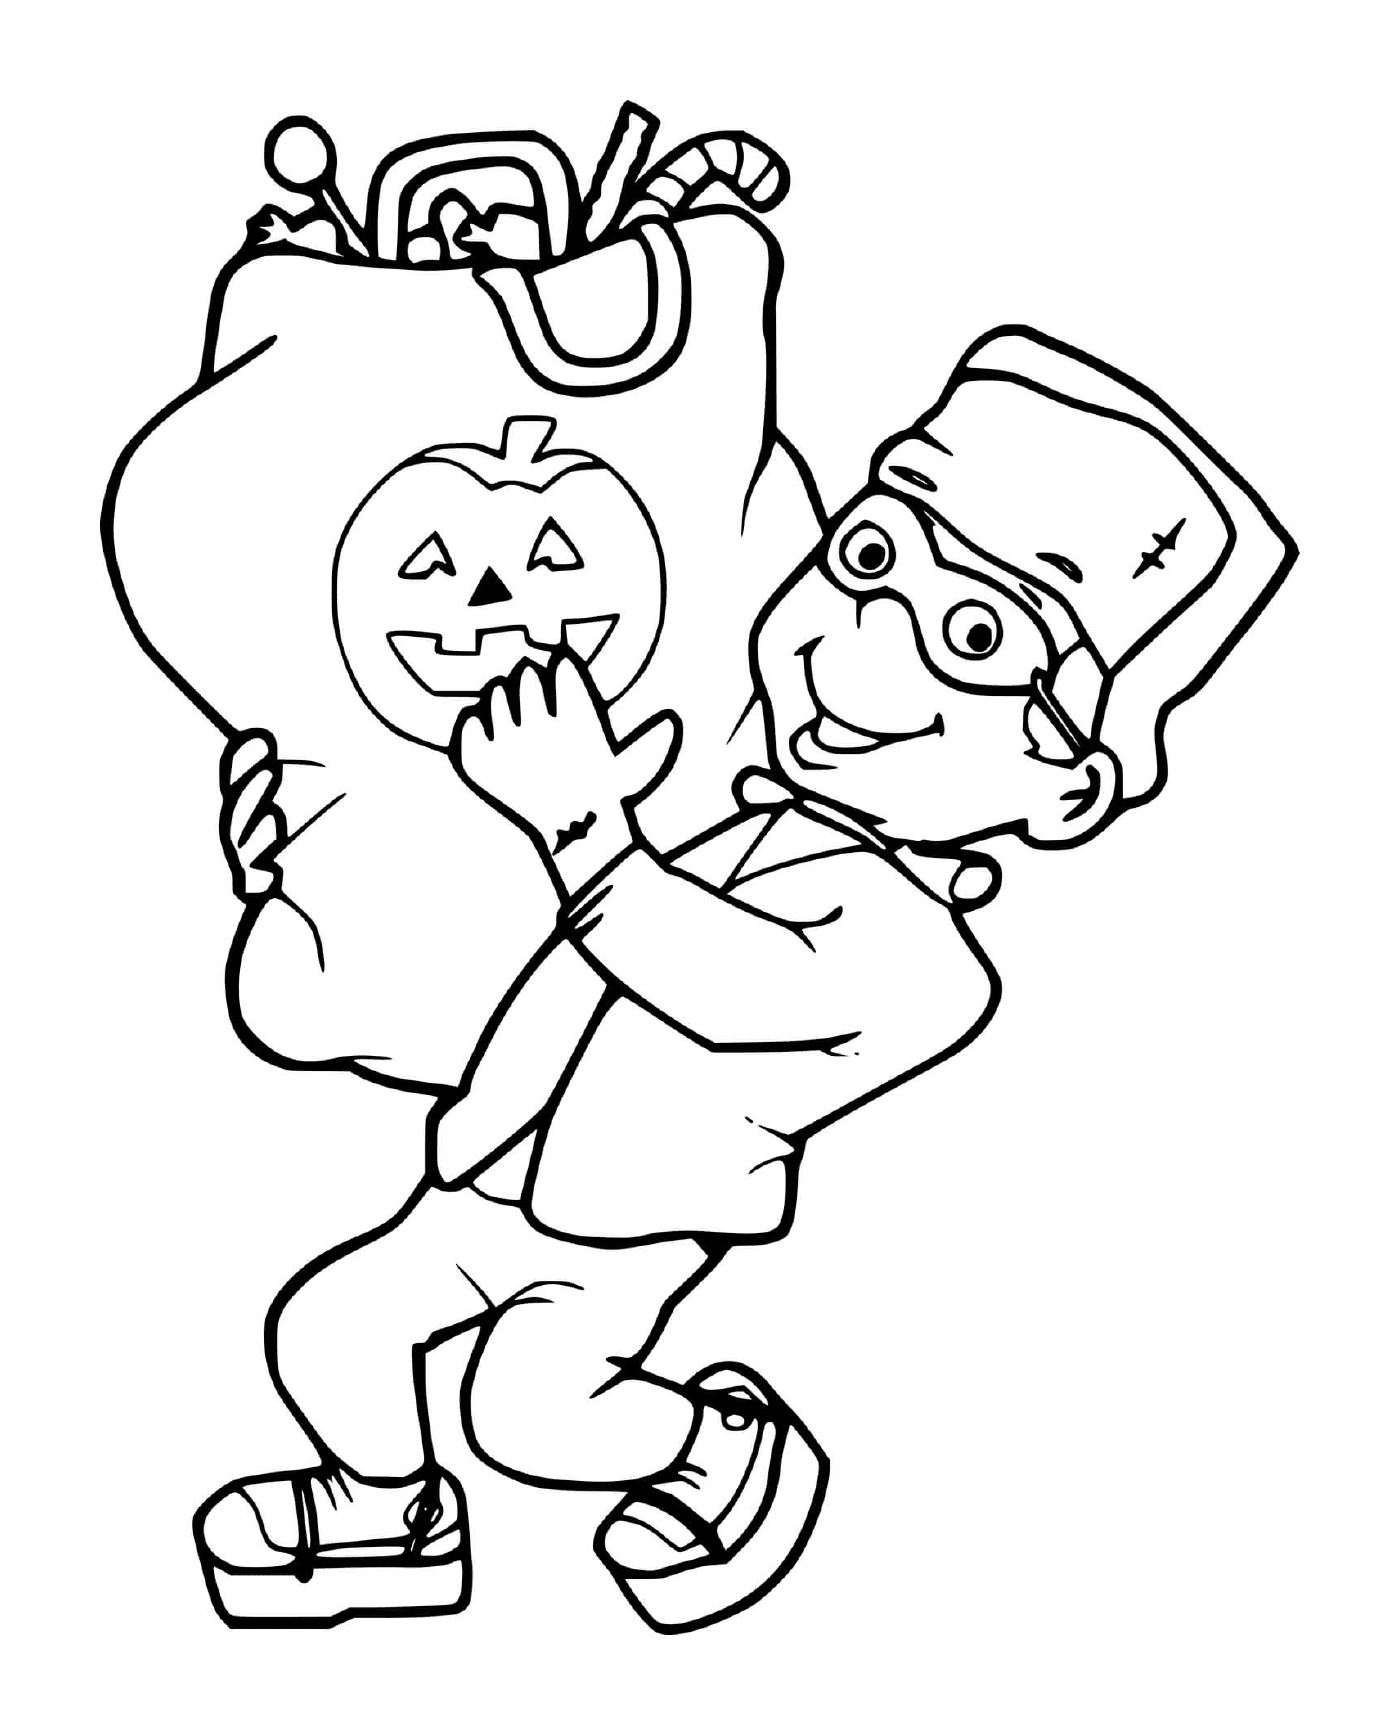  Ребёнок с костюмом Франкенштейна собирает большой пакет с угощением на Хэллоуин 